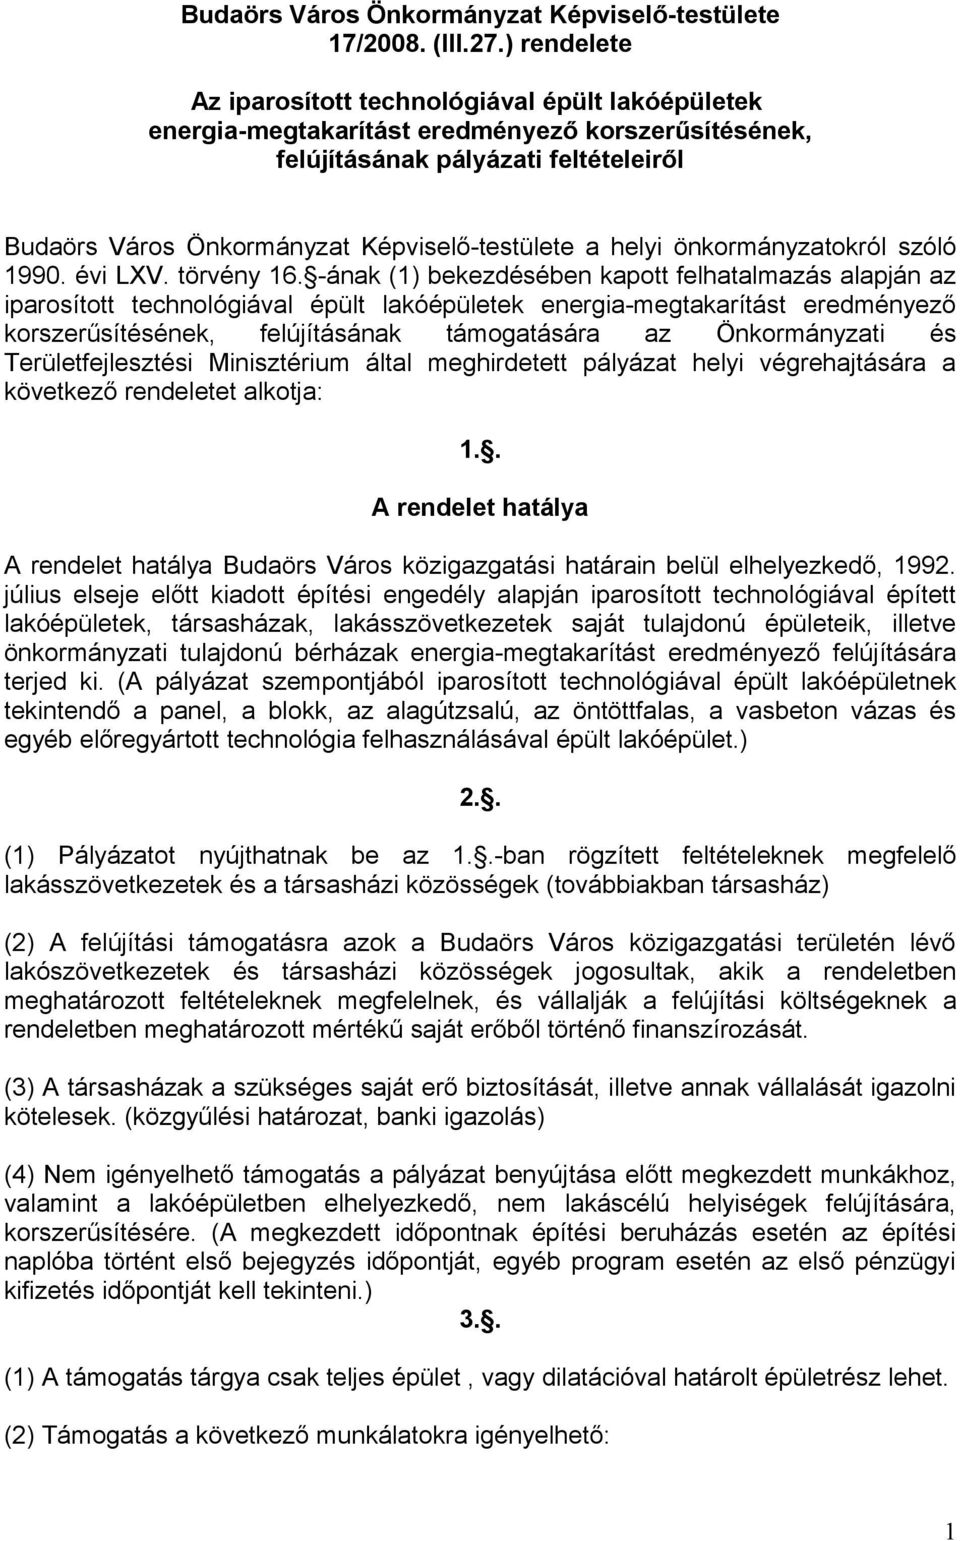 a helyi önkormányzatokról szóló 1990. évi LXV. törvény 16.